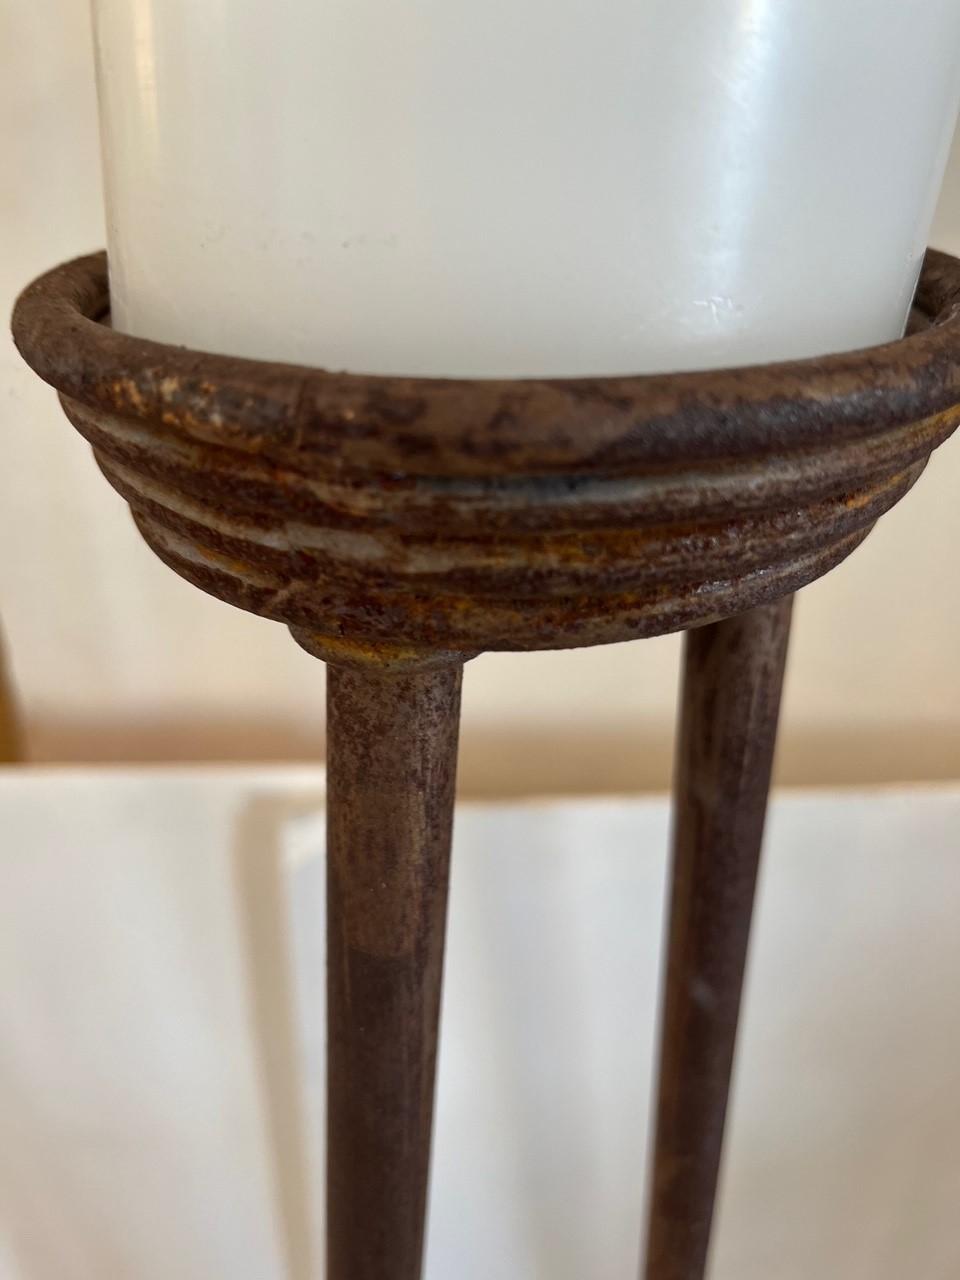 Paar Vintage geschmiedetes Eisen Boden-Kerzenhalter, Aged Eisen mit Rost Unterton, gute Verschleiß im Einklang mit Alter und Nutzung
Hoher Boden-Kerzenhalter: 60 